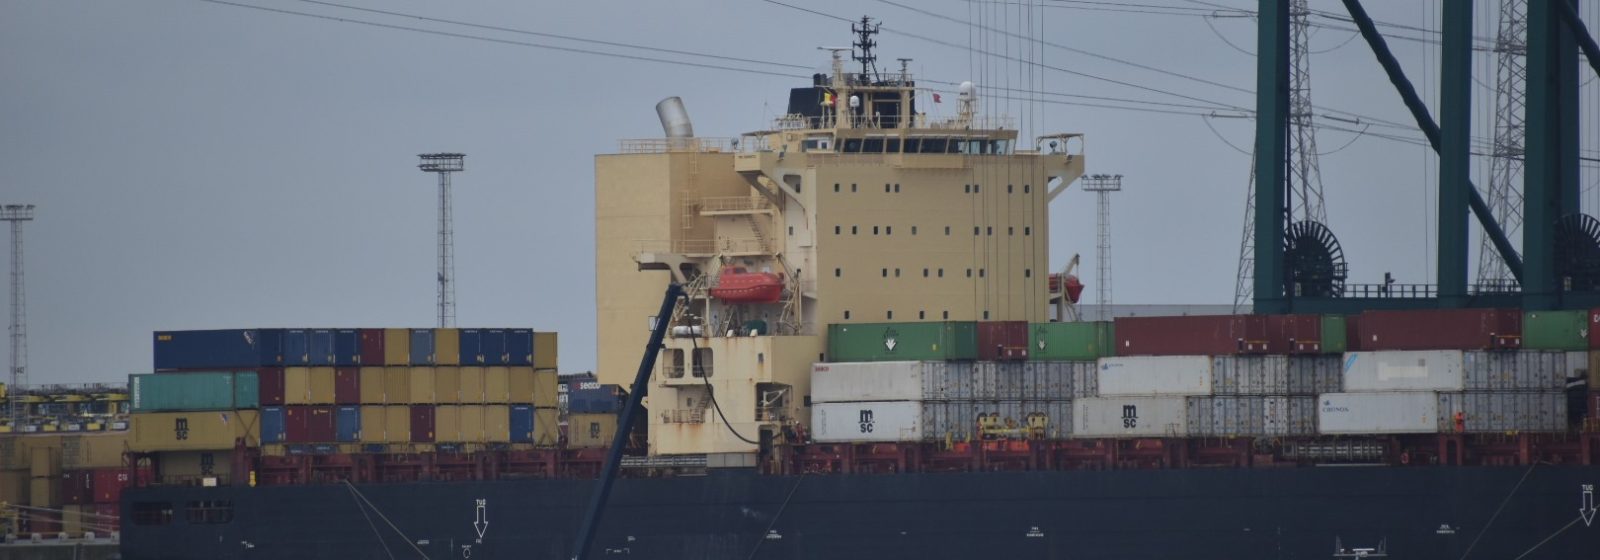 Het containerschip 'MP The Brady' werd eind 2019 met een scrubber uitgerust